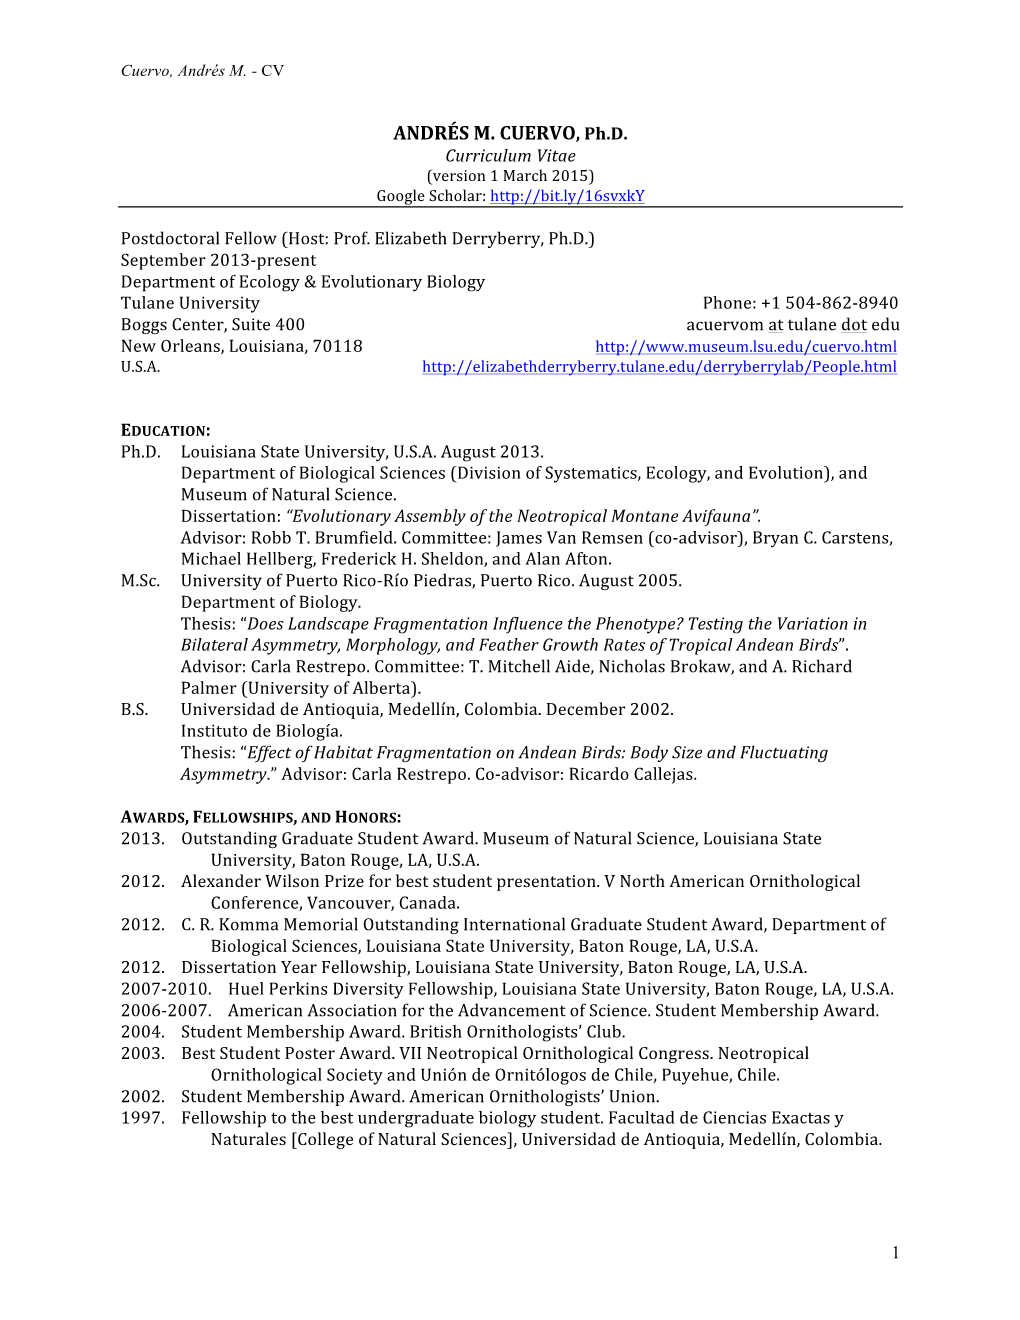 Curriculum Vitae (Version 1 March 2015) Google Scholar